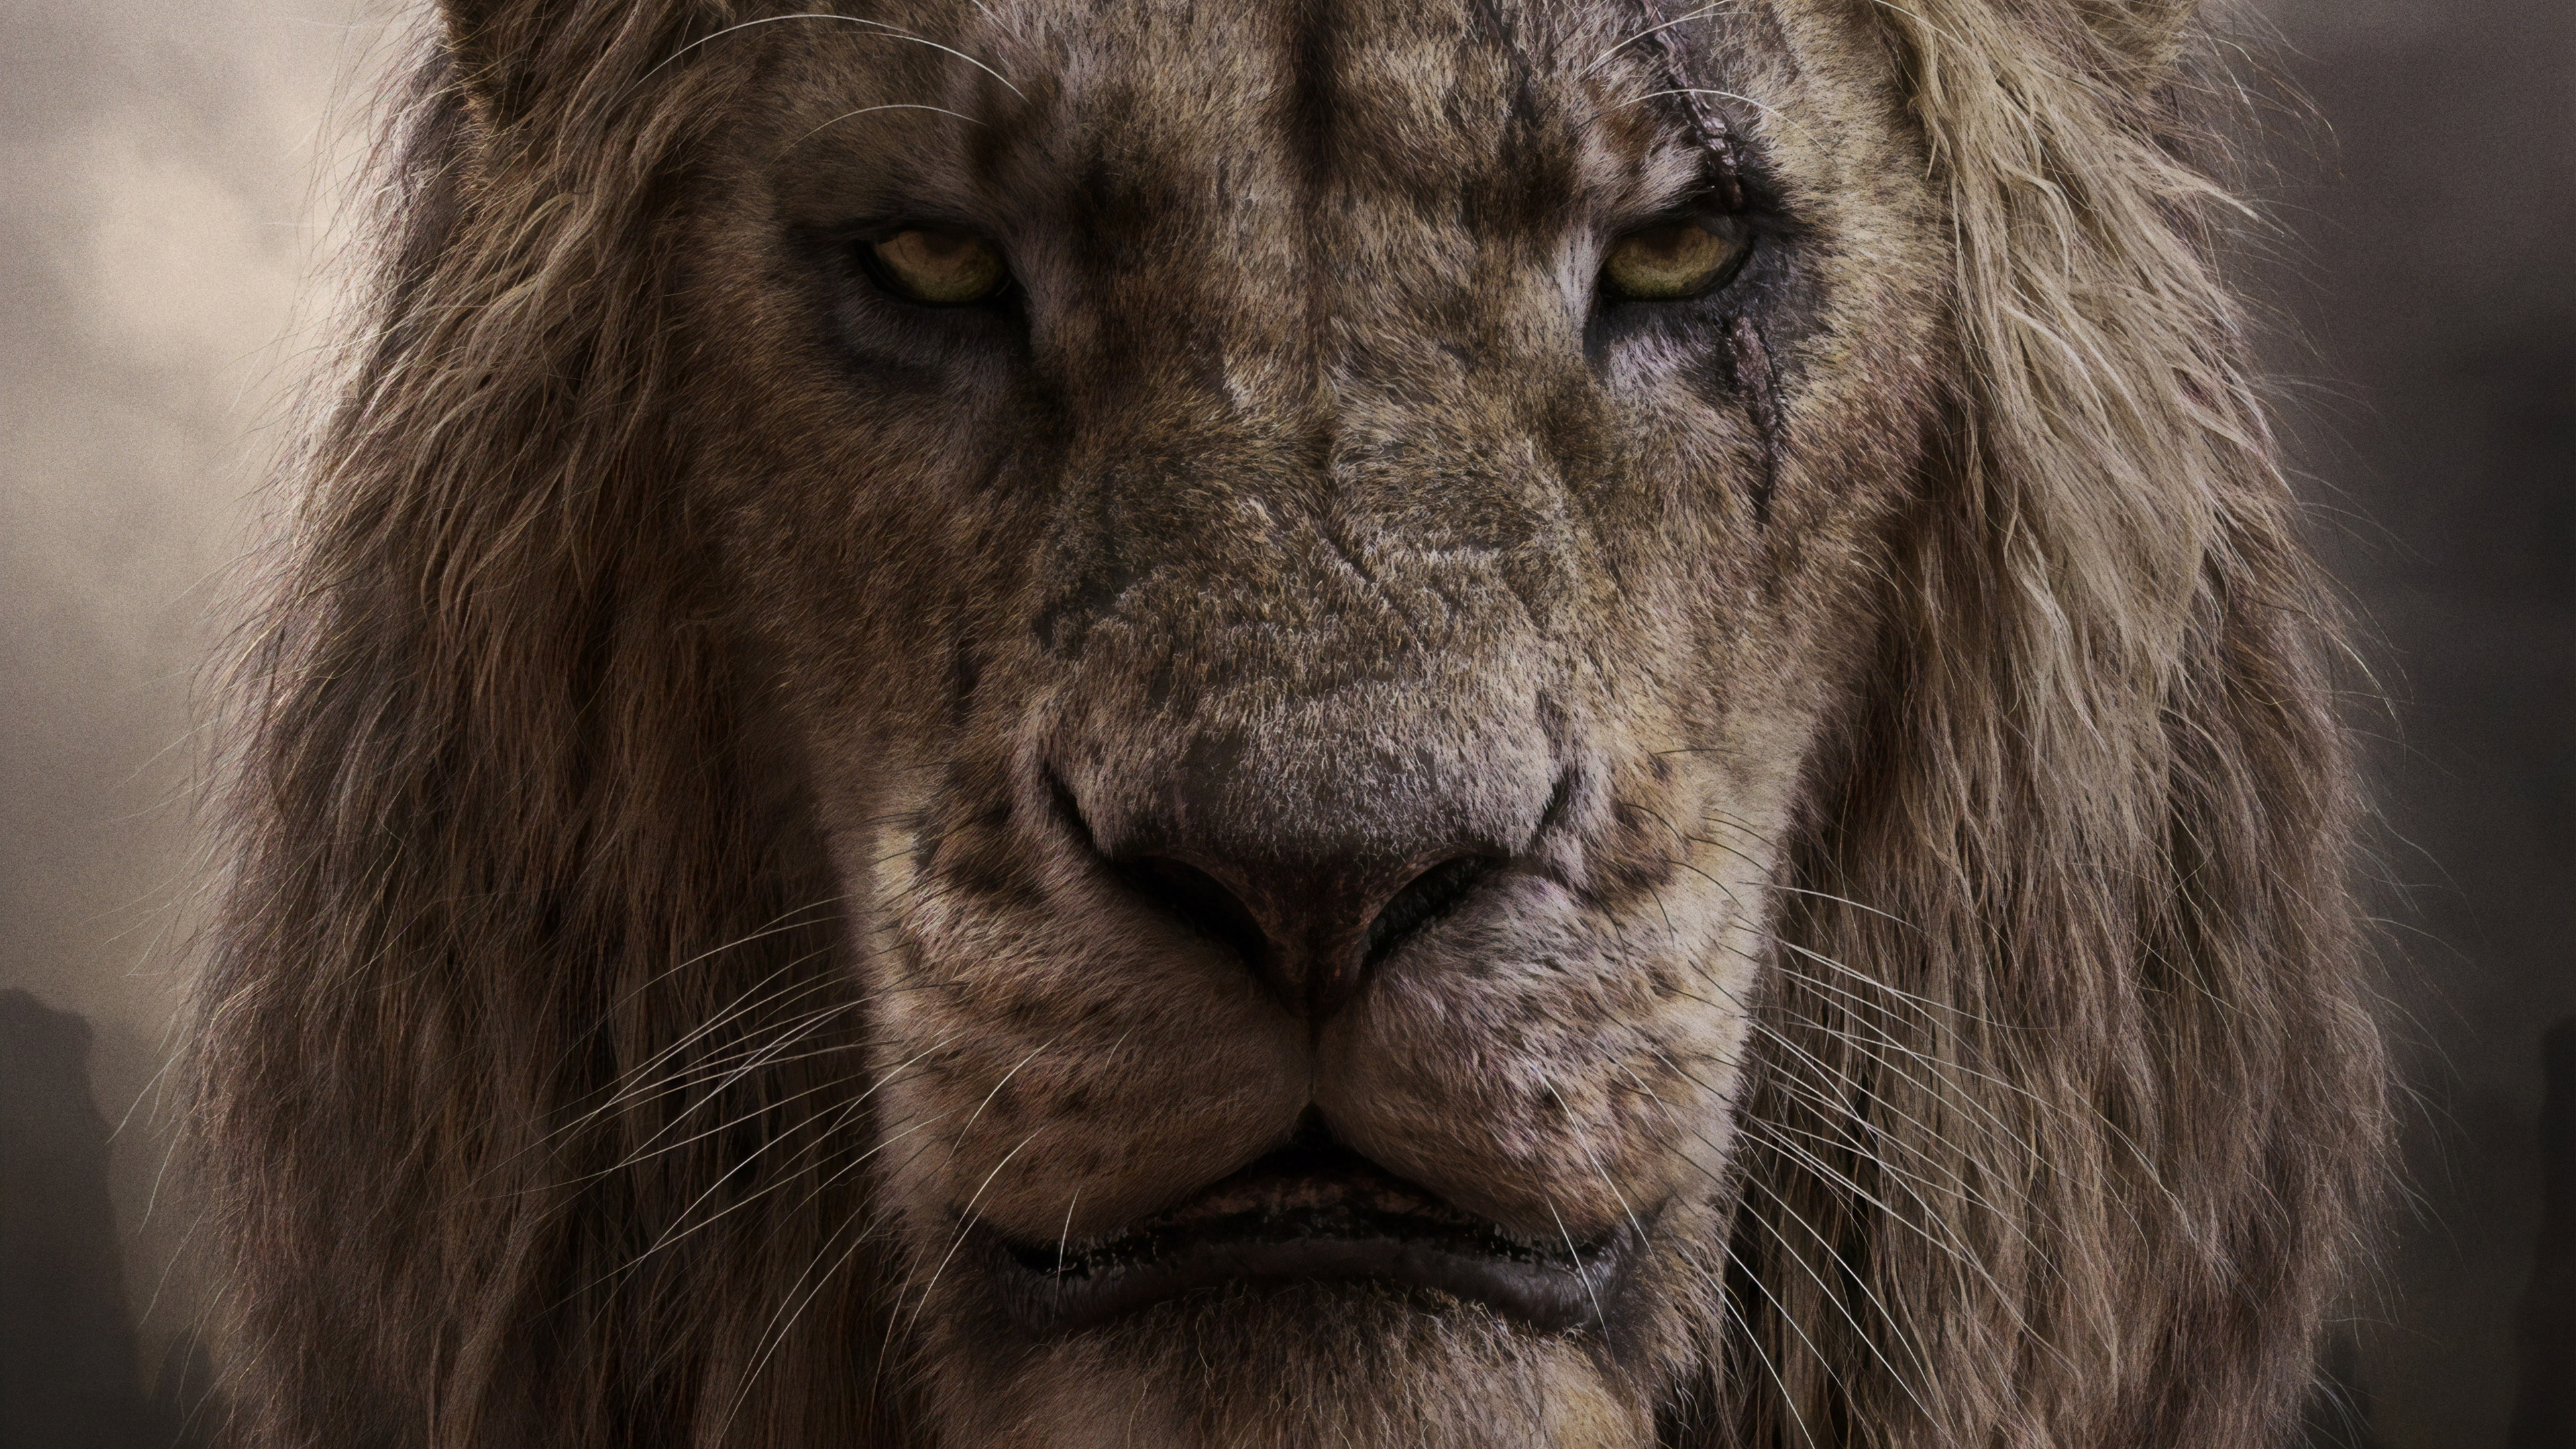 The Lion King, 2019, Movies, Scar wallpaper, 3840x2160 4K Desktop